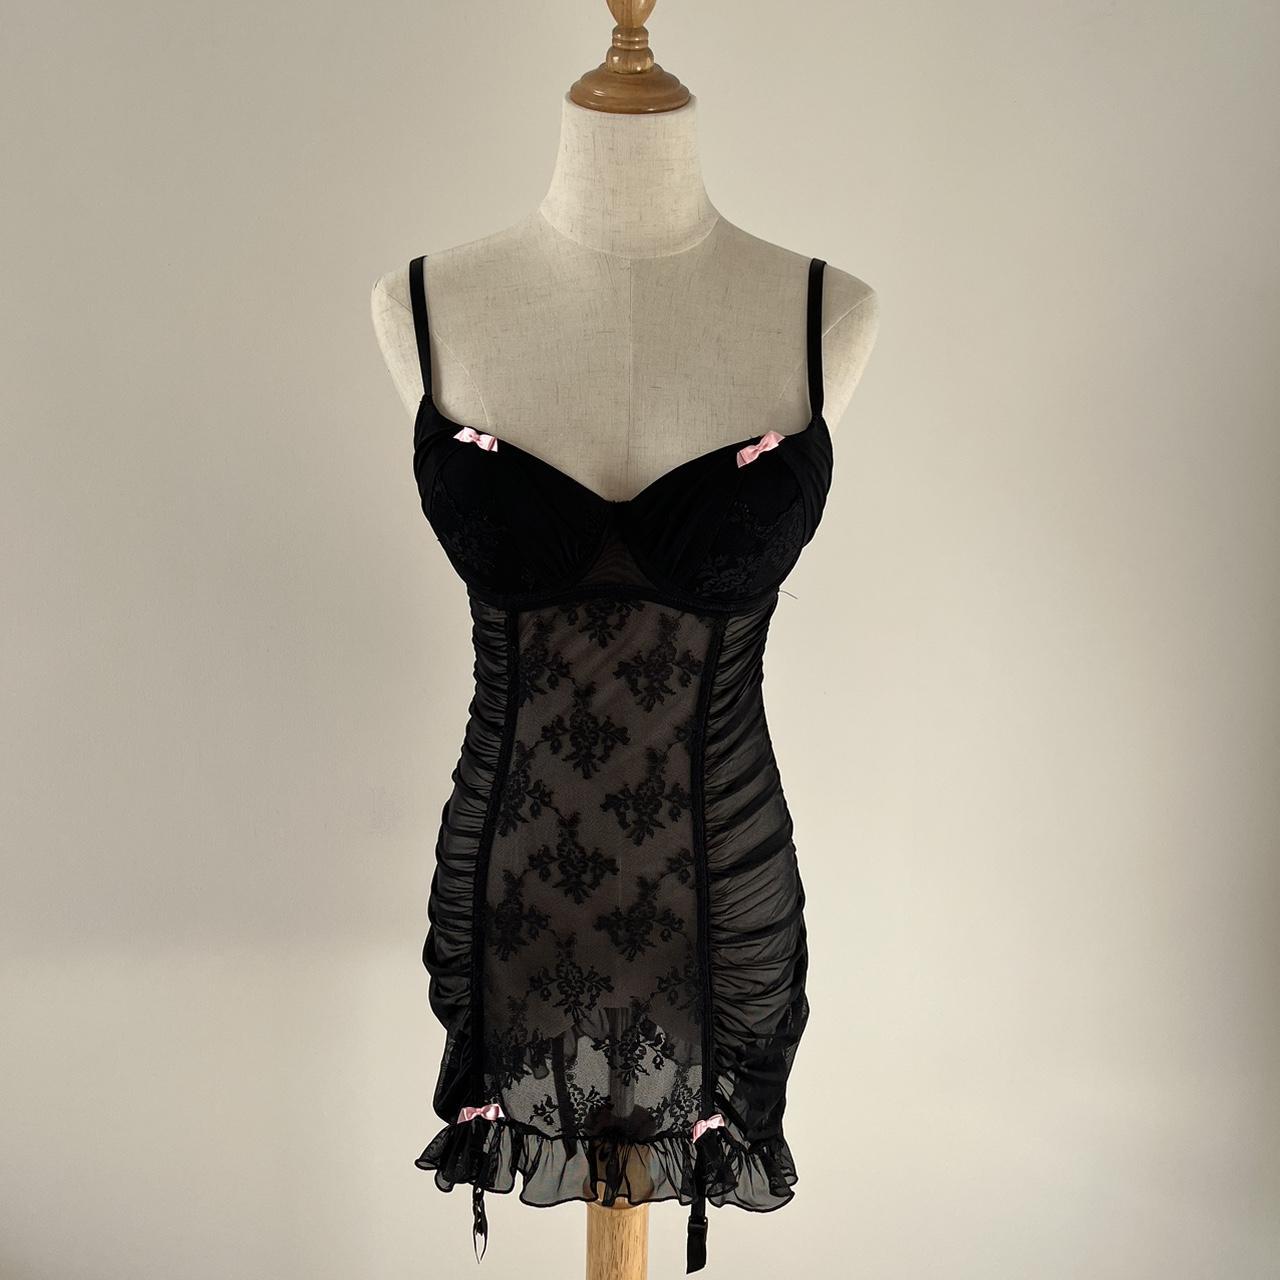 Boux Avenue Women's Black and Pink Nightwear | Depop